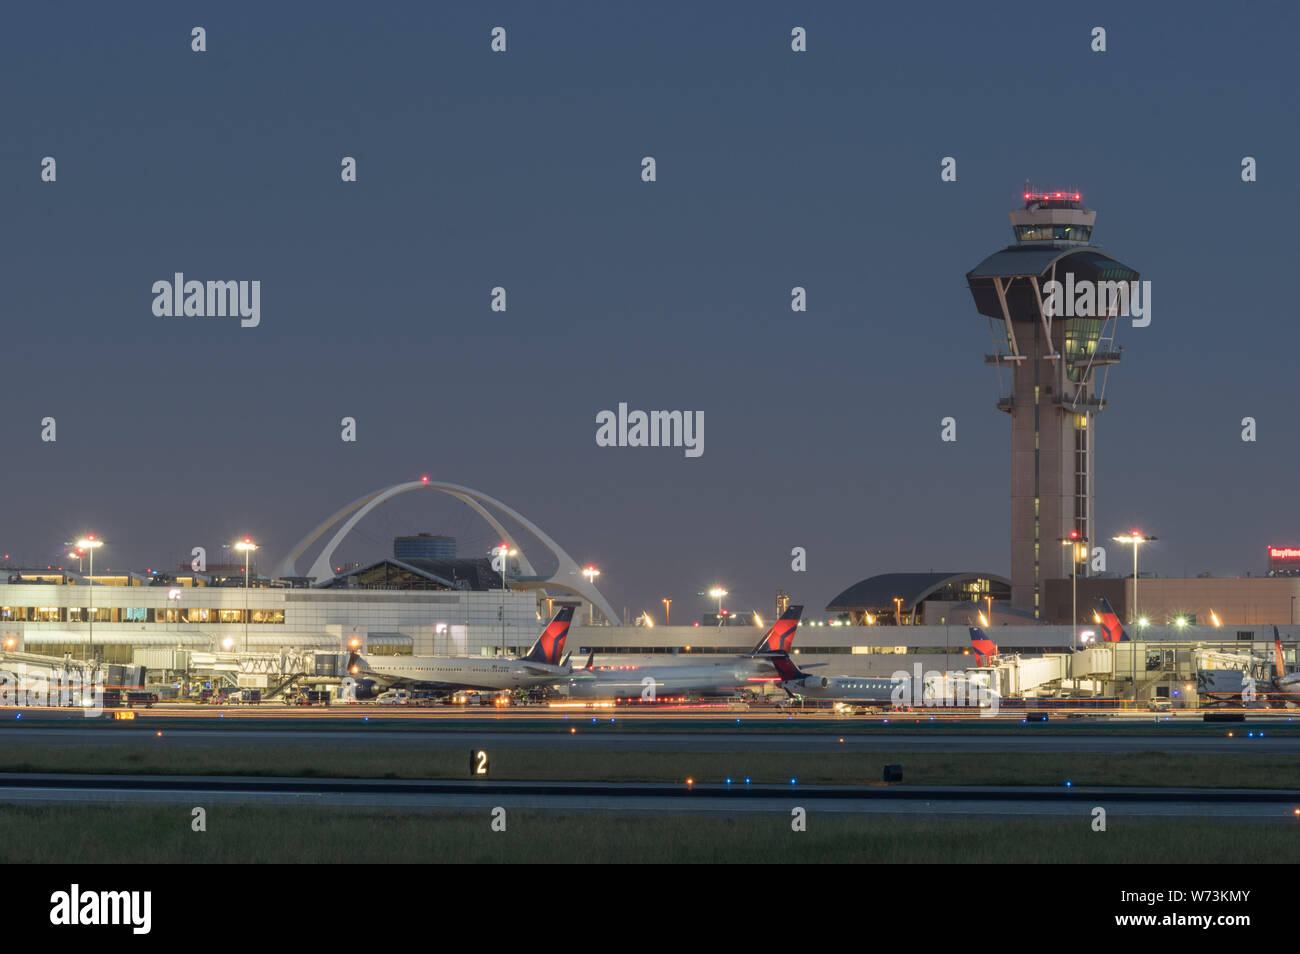 Bild von dem Thema Gebäude- und Kontrollturm und Delta Air Lines jets am Tor am internationalen Flughafen von Los Angeles, LAX, in der Dämmerung. Stockfoto